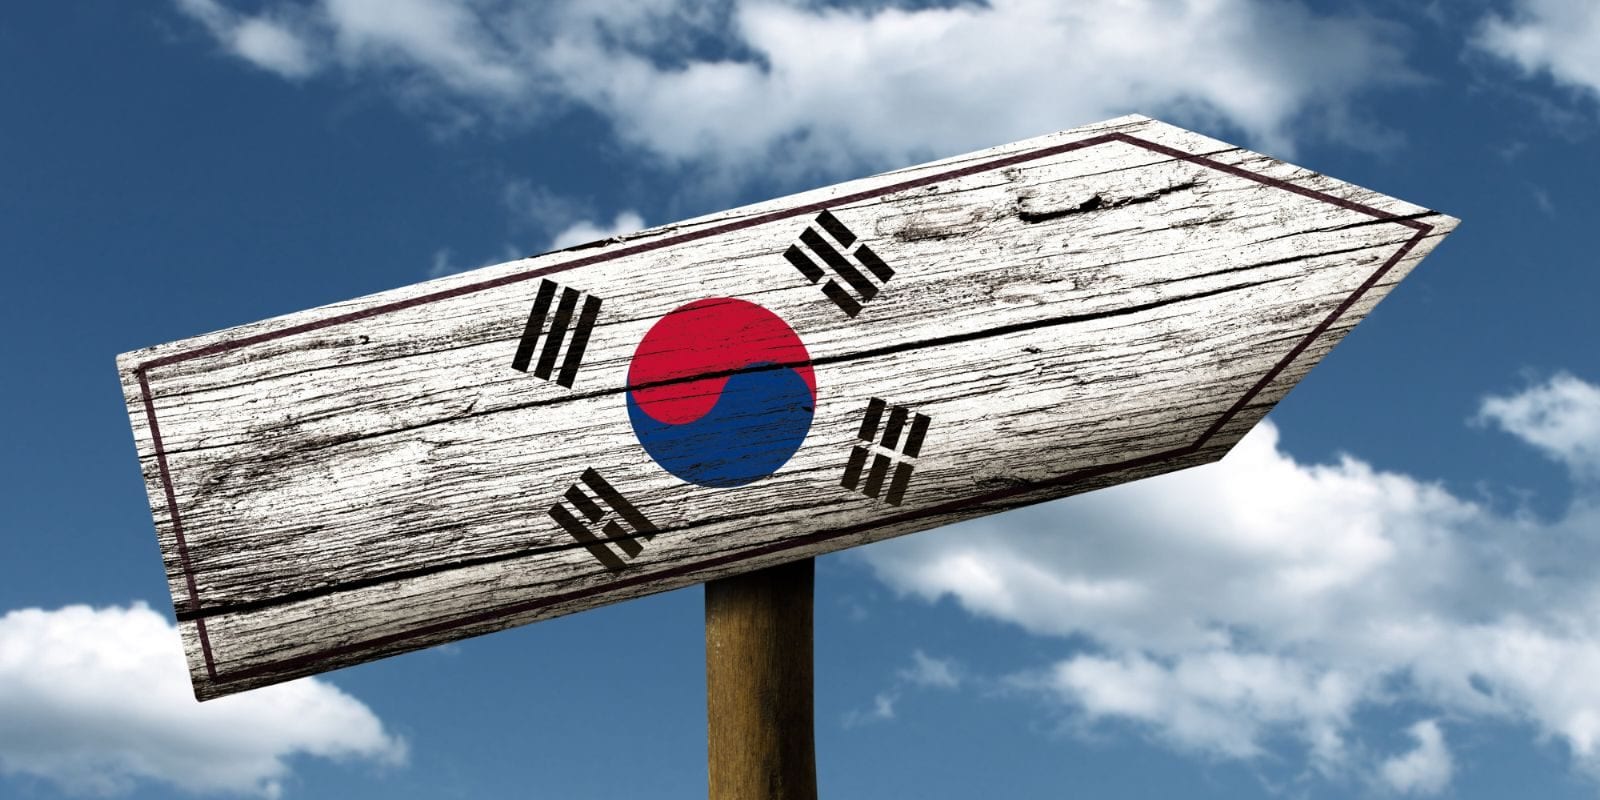 Tìm Hiểu Về Giáo Dục Ở Hàn Quốc Phát Triển Như Thế Nào? 10 Điều Thú Vị Về Giáo Dục Hàn Quốc